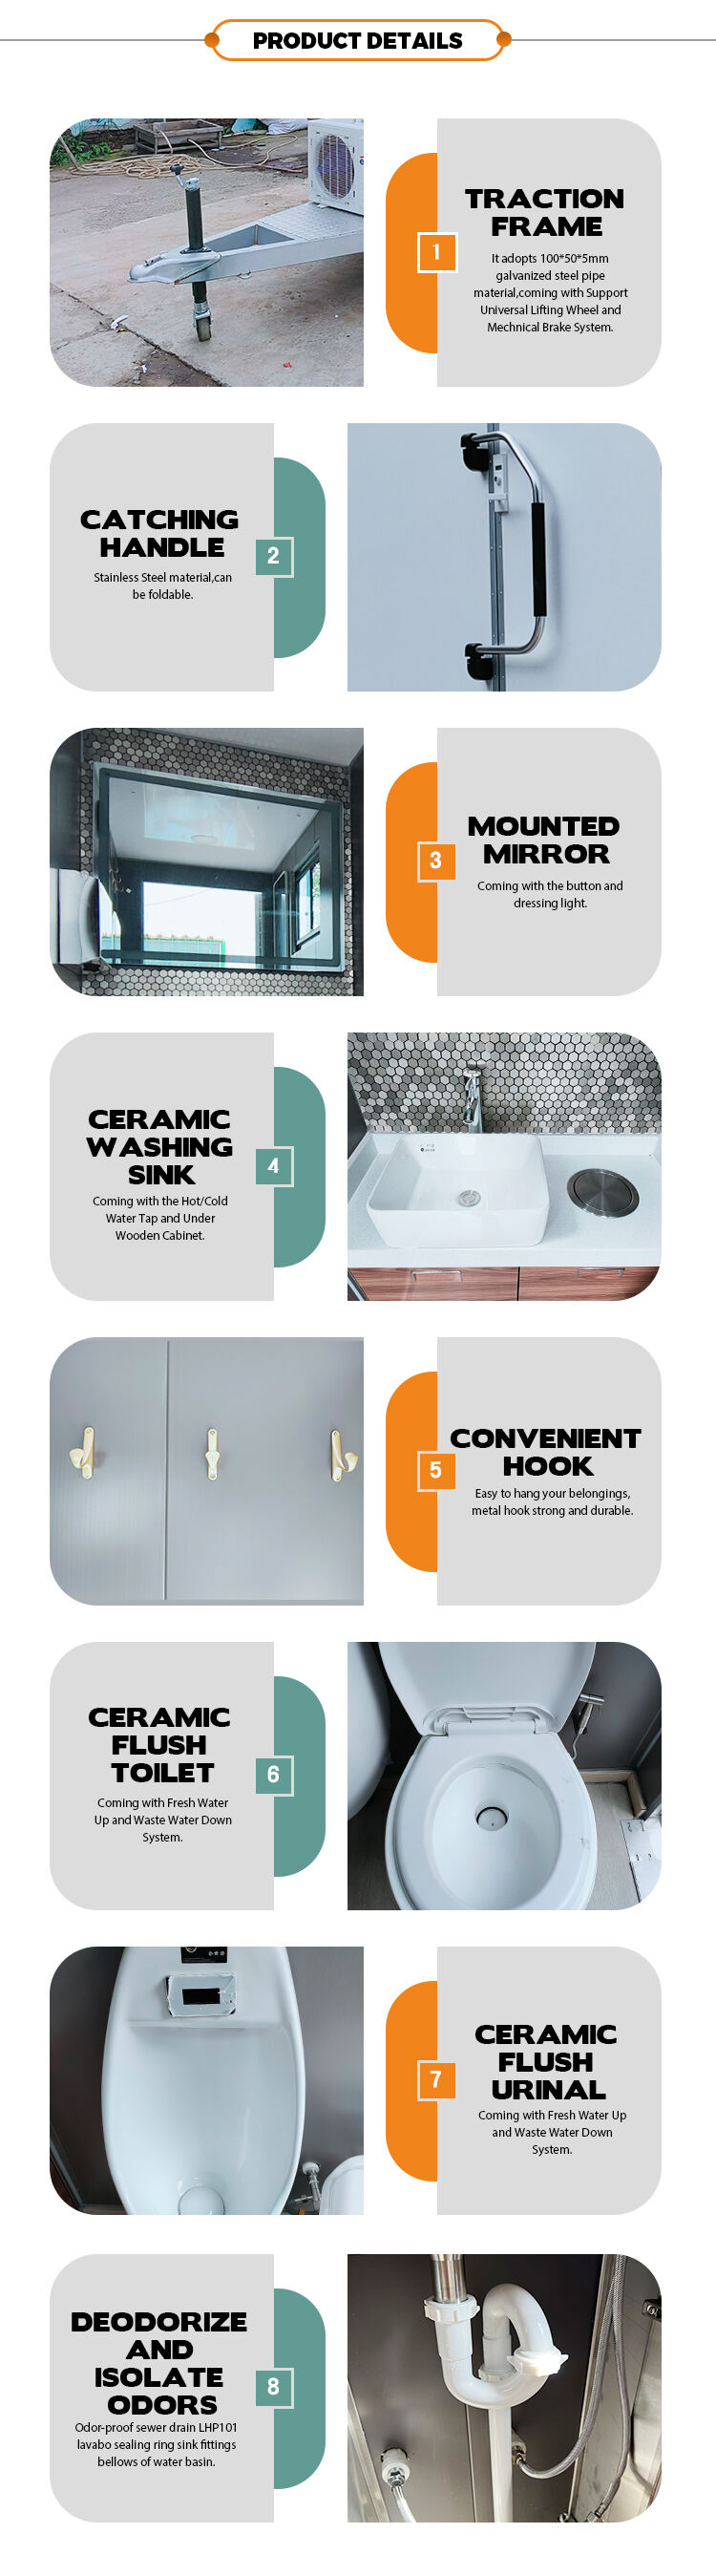 ADA Compliant Restroom Trailer Toilet Trailer Manufacturer details